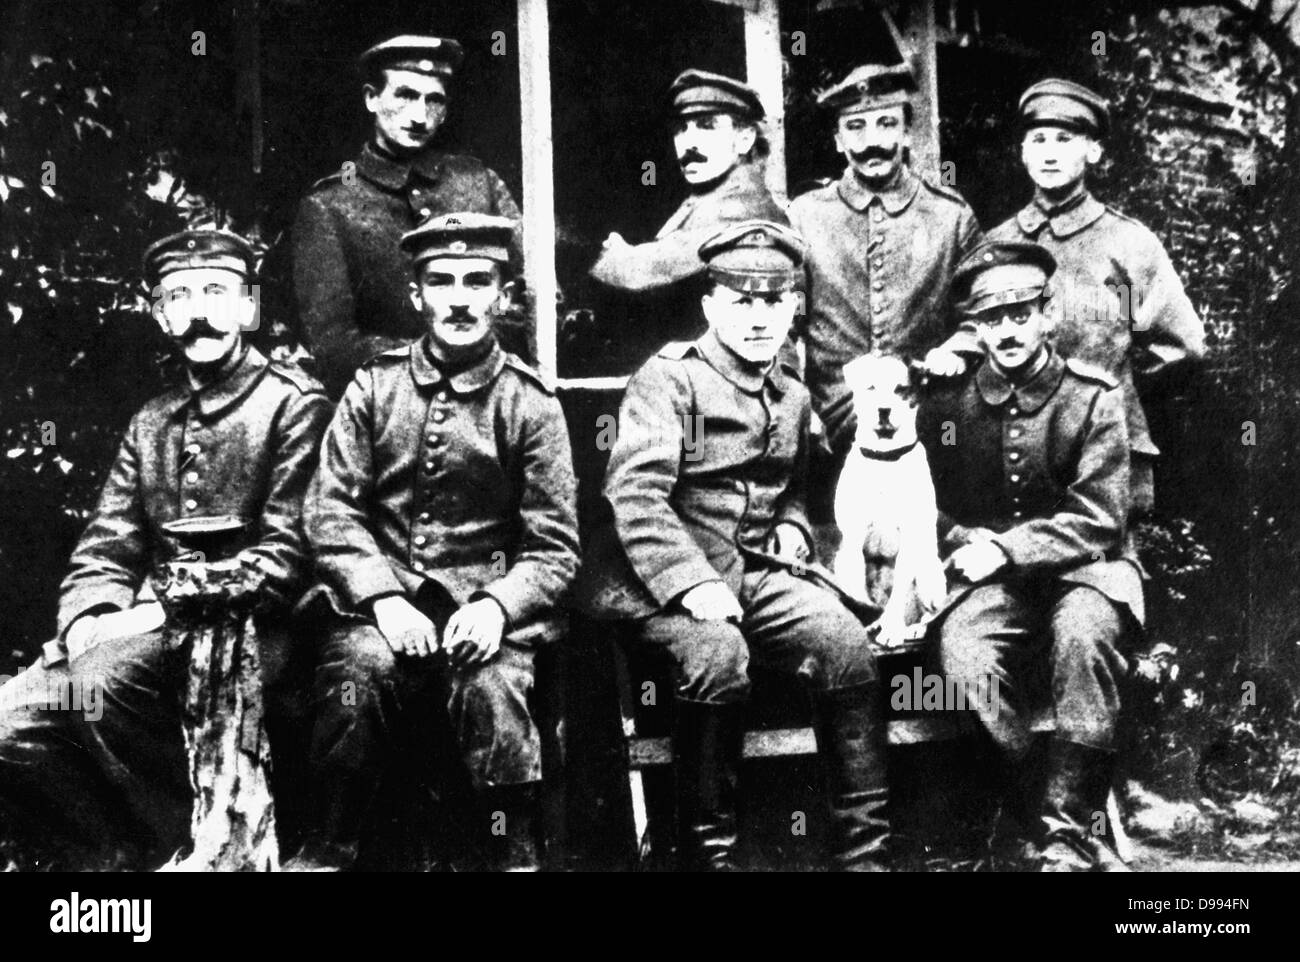 Fotografia di Adolf Hitler con altri soldati nella guerra mondiale I Foto Stock